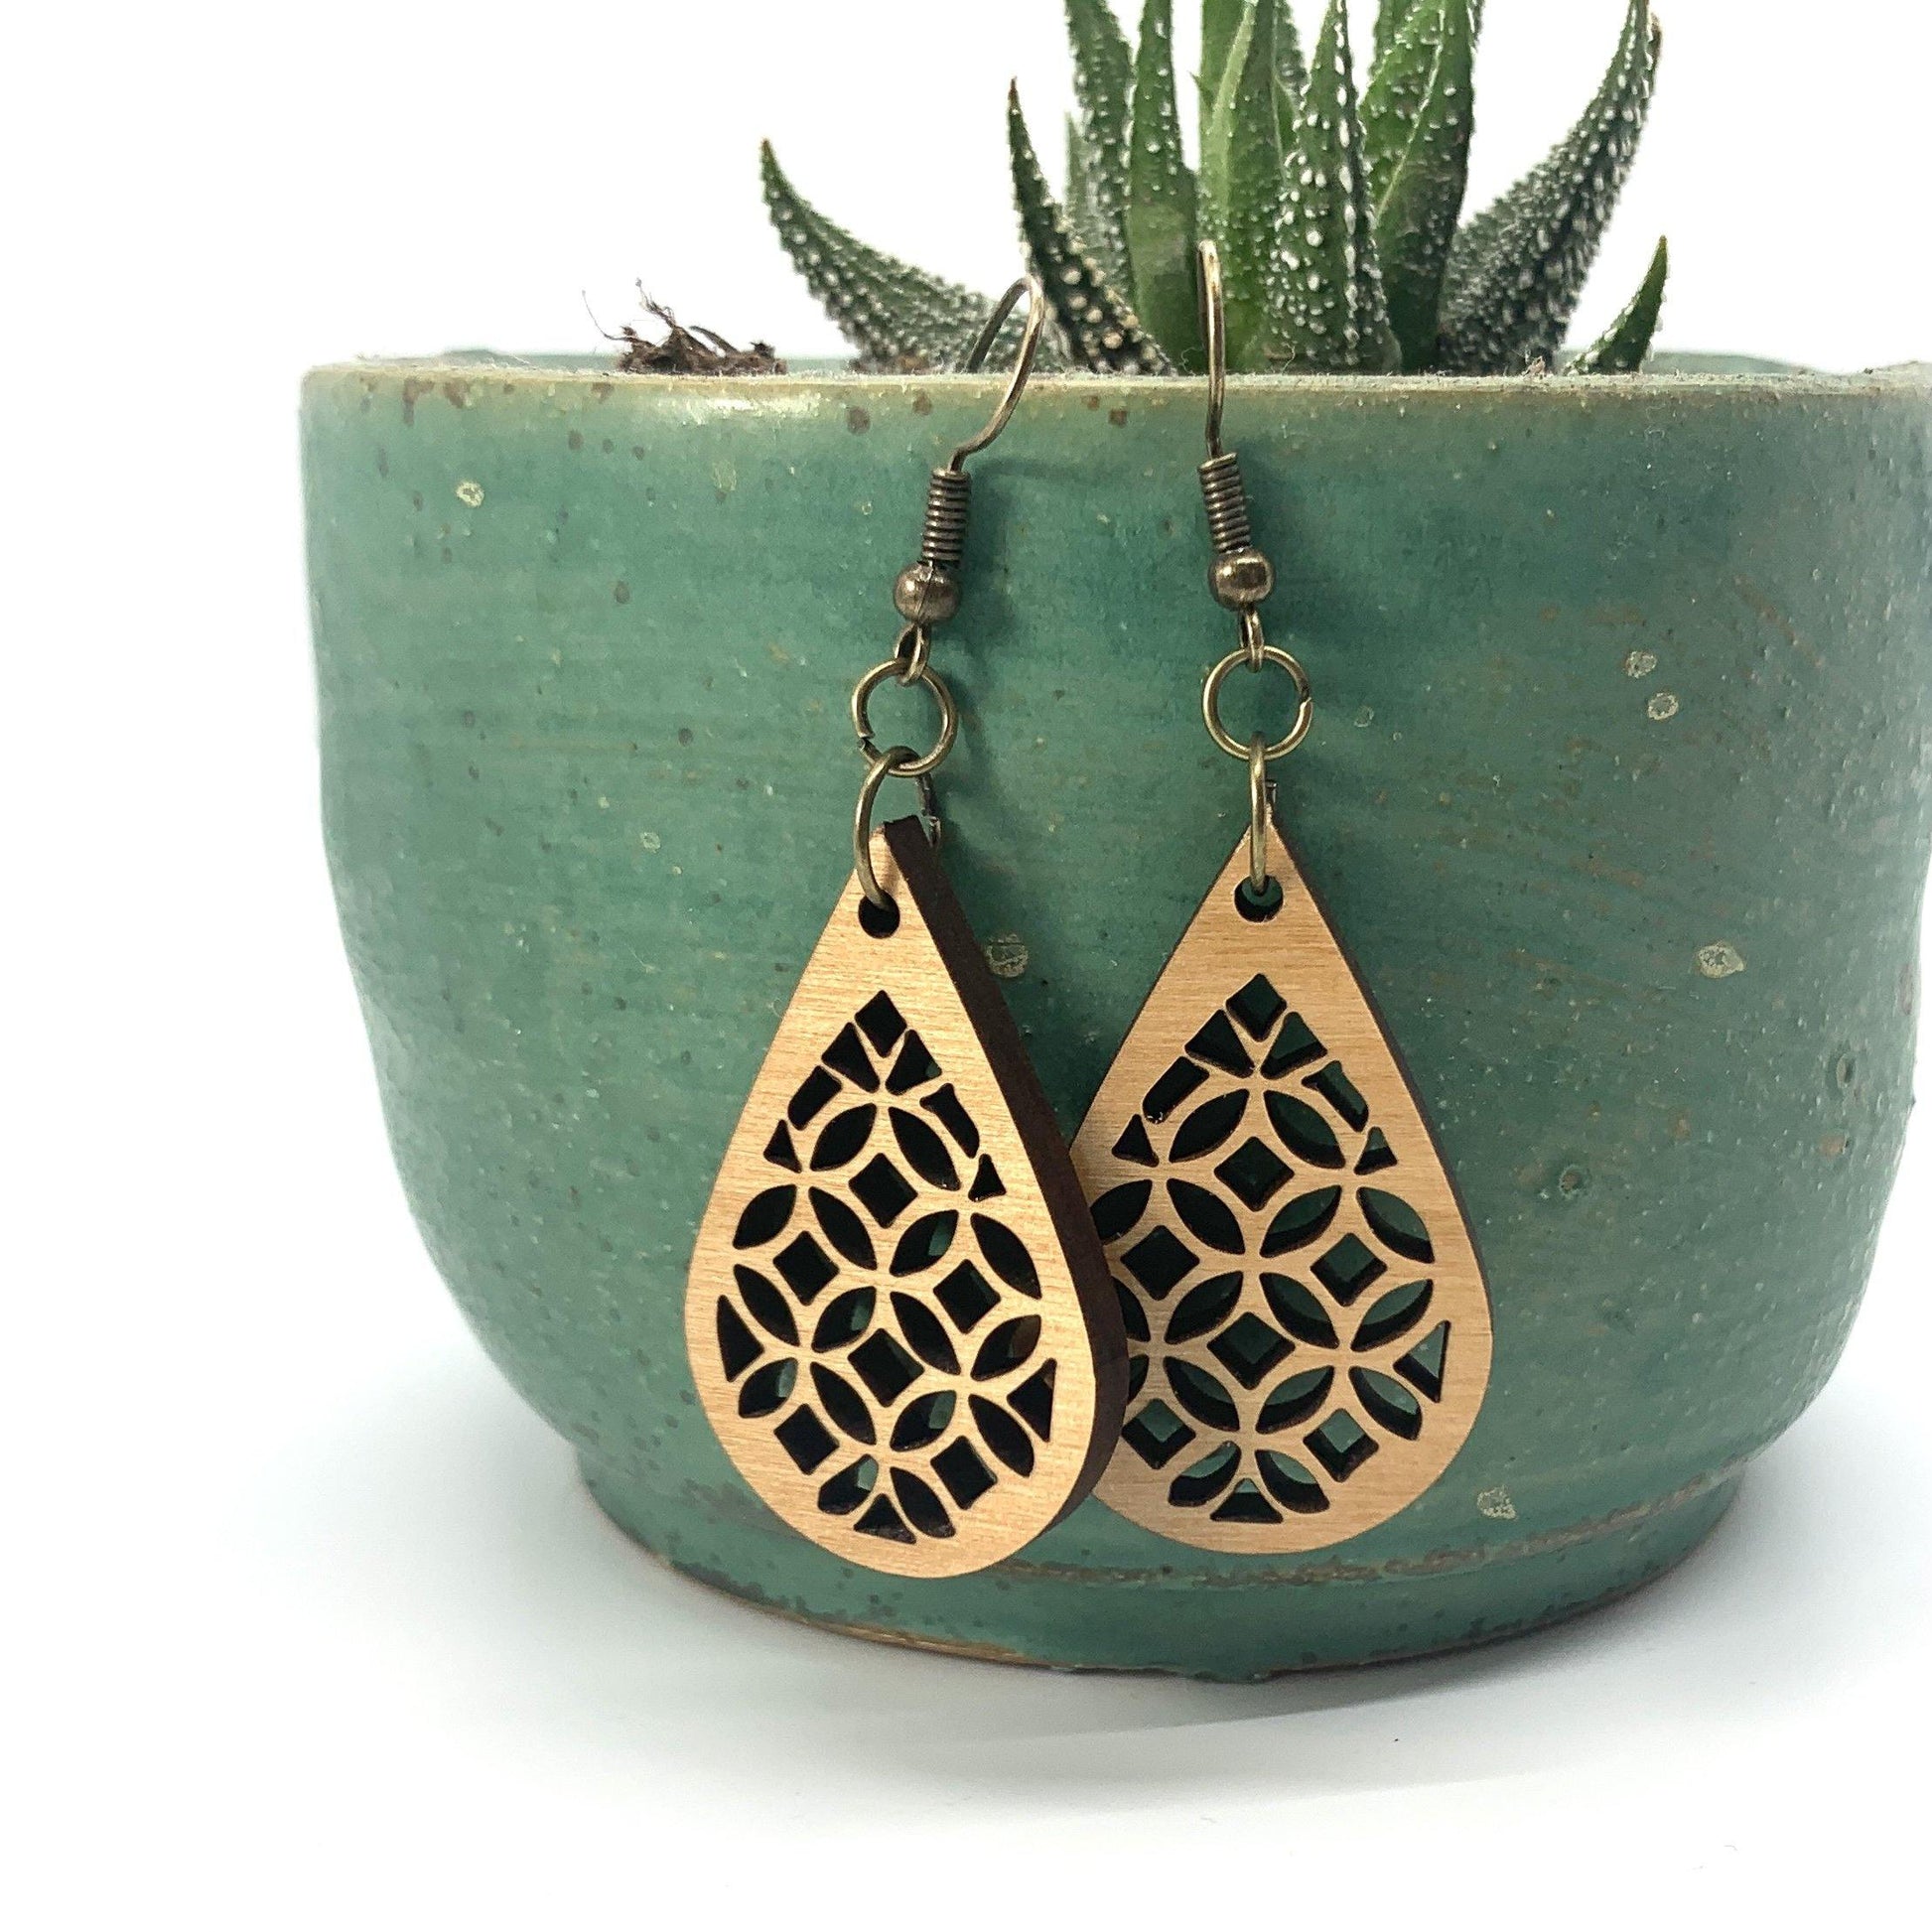 Geometric Wood Earrings, Teardrop Earrings, Wood Jewelry, Handmade Wood Jewelry, Dangle Earrings - Whidden's Woodshop